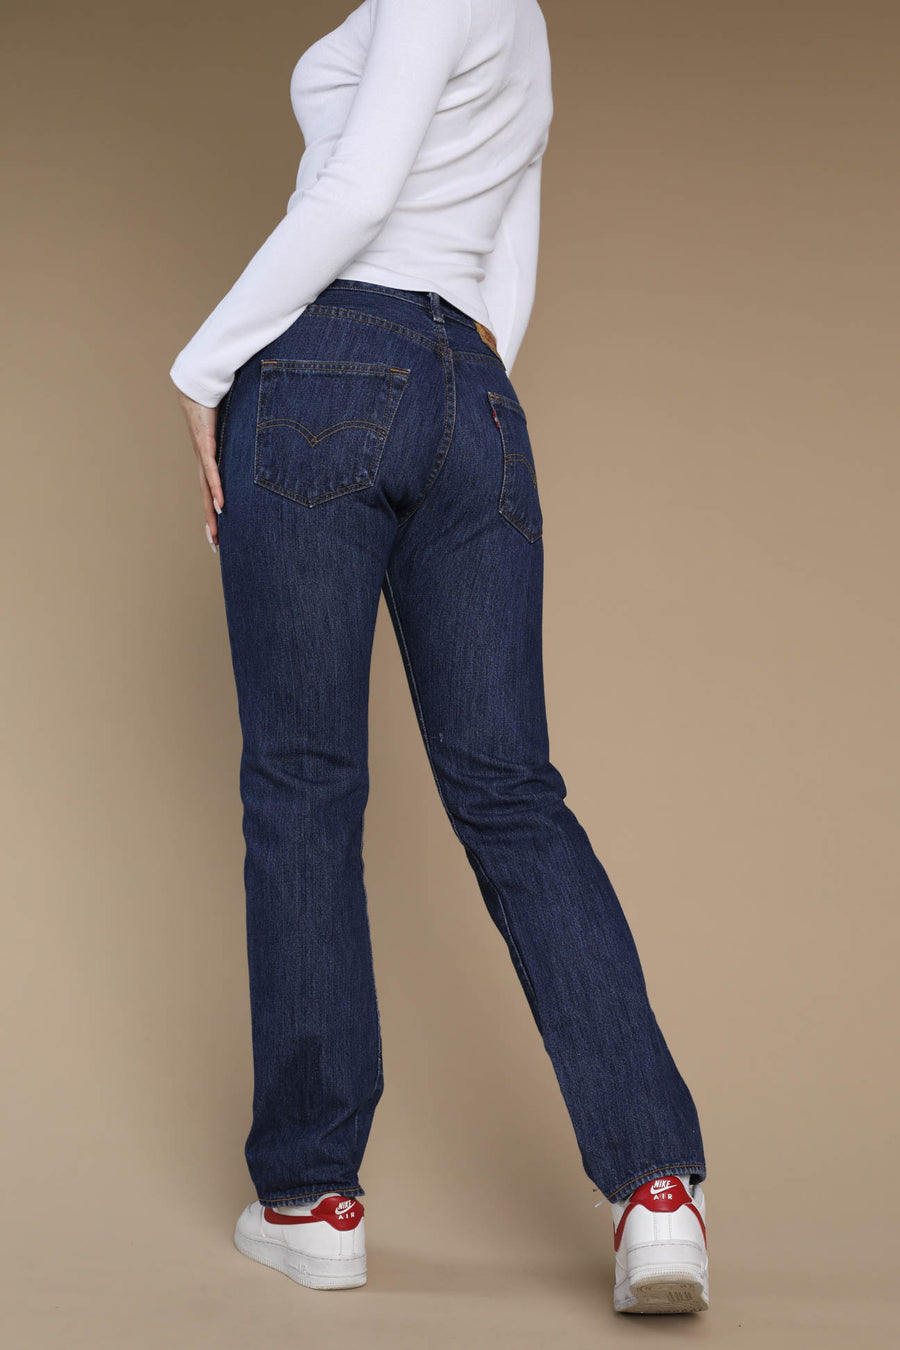 Vintage Levi's 501 Denim Pants